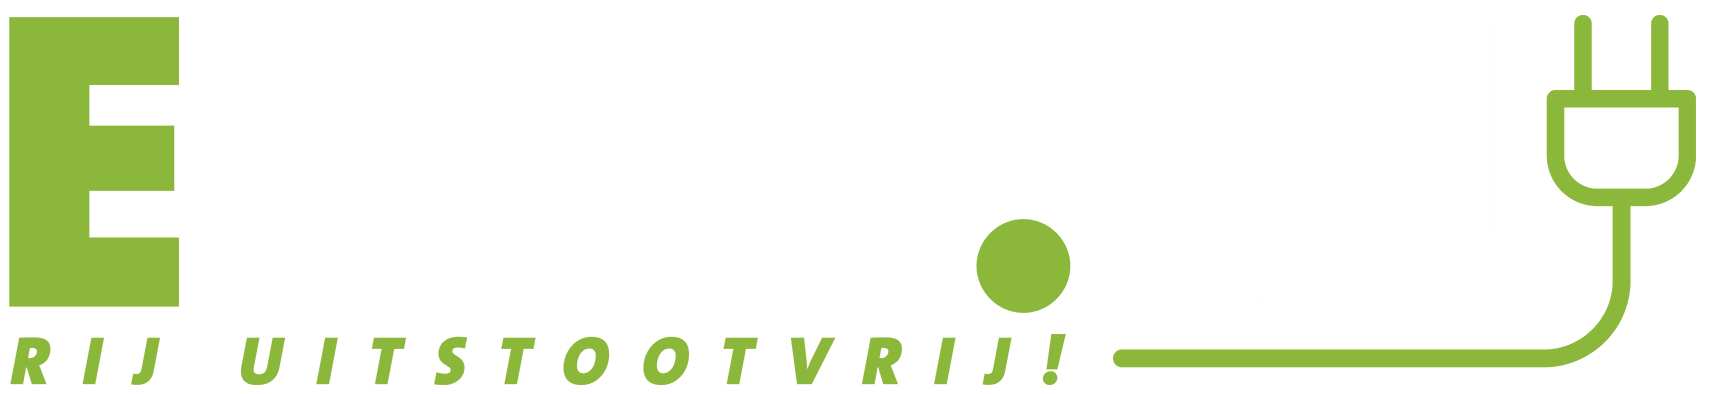 ECAR.NL – alles over elektrisch rijden